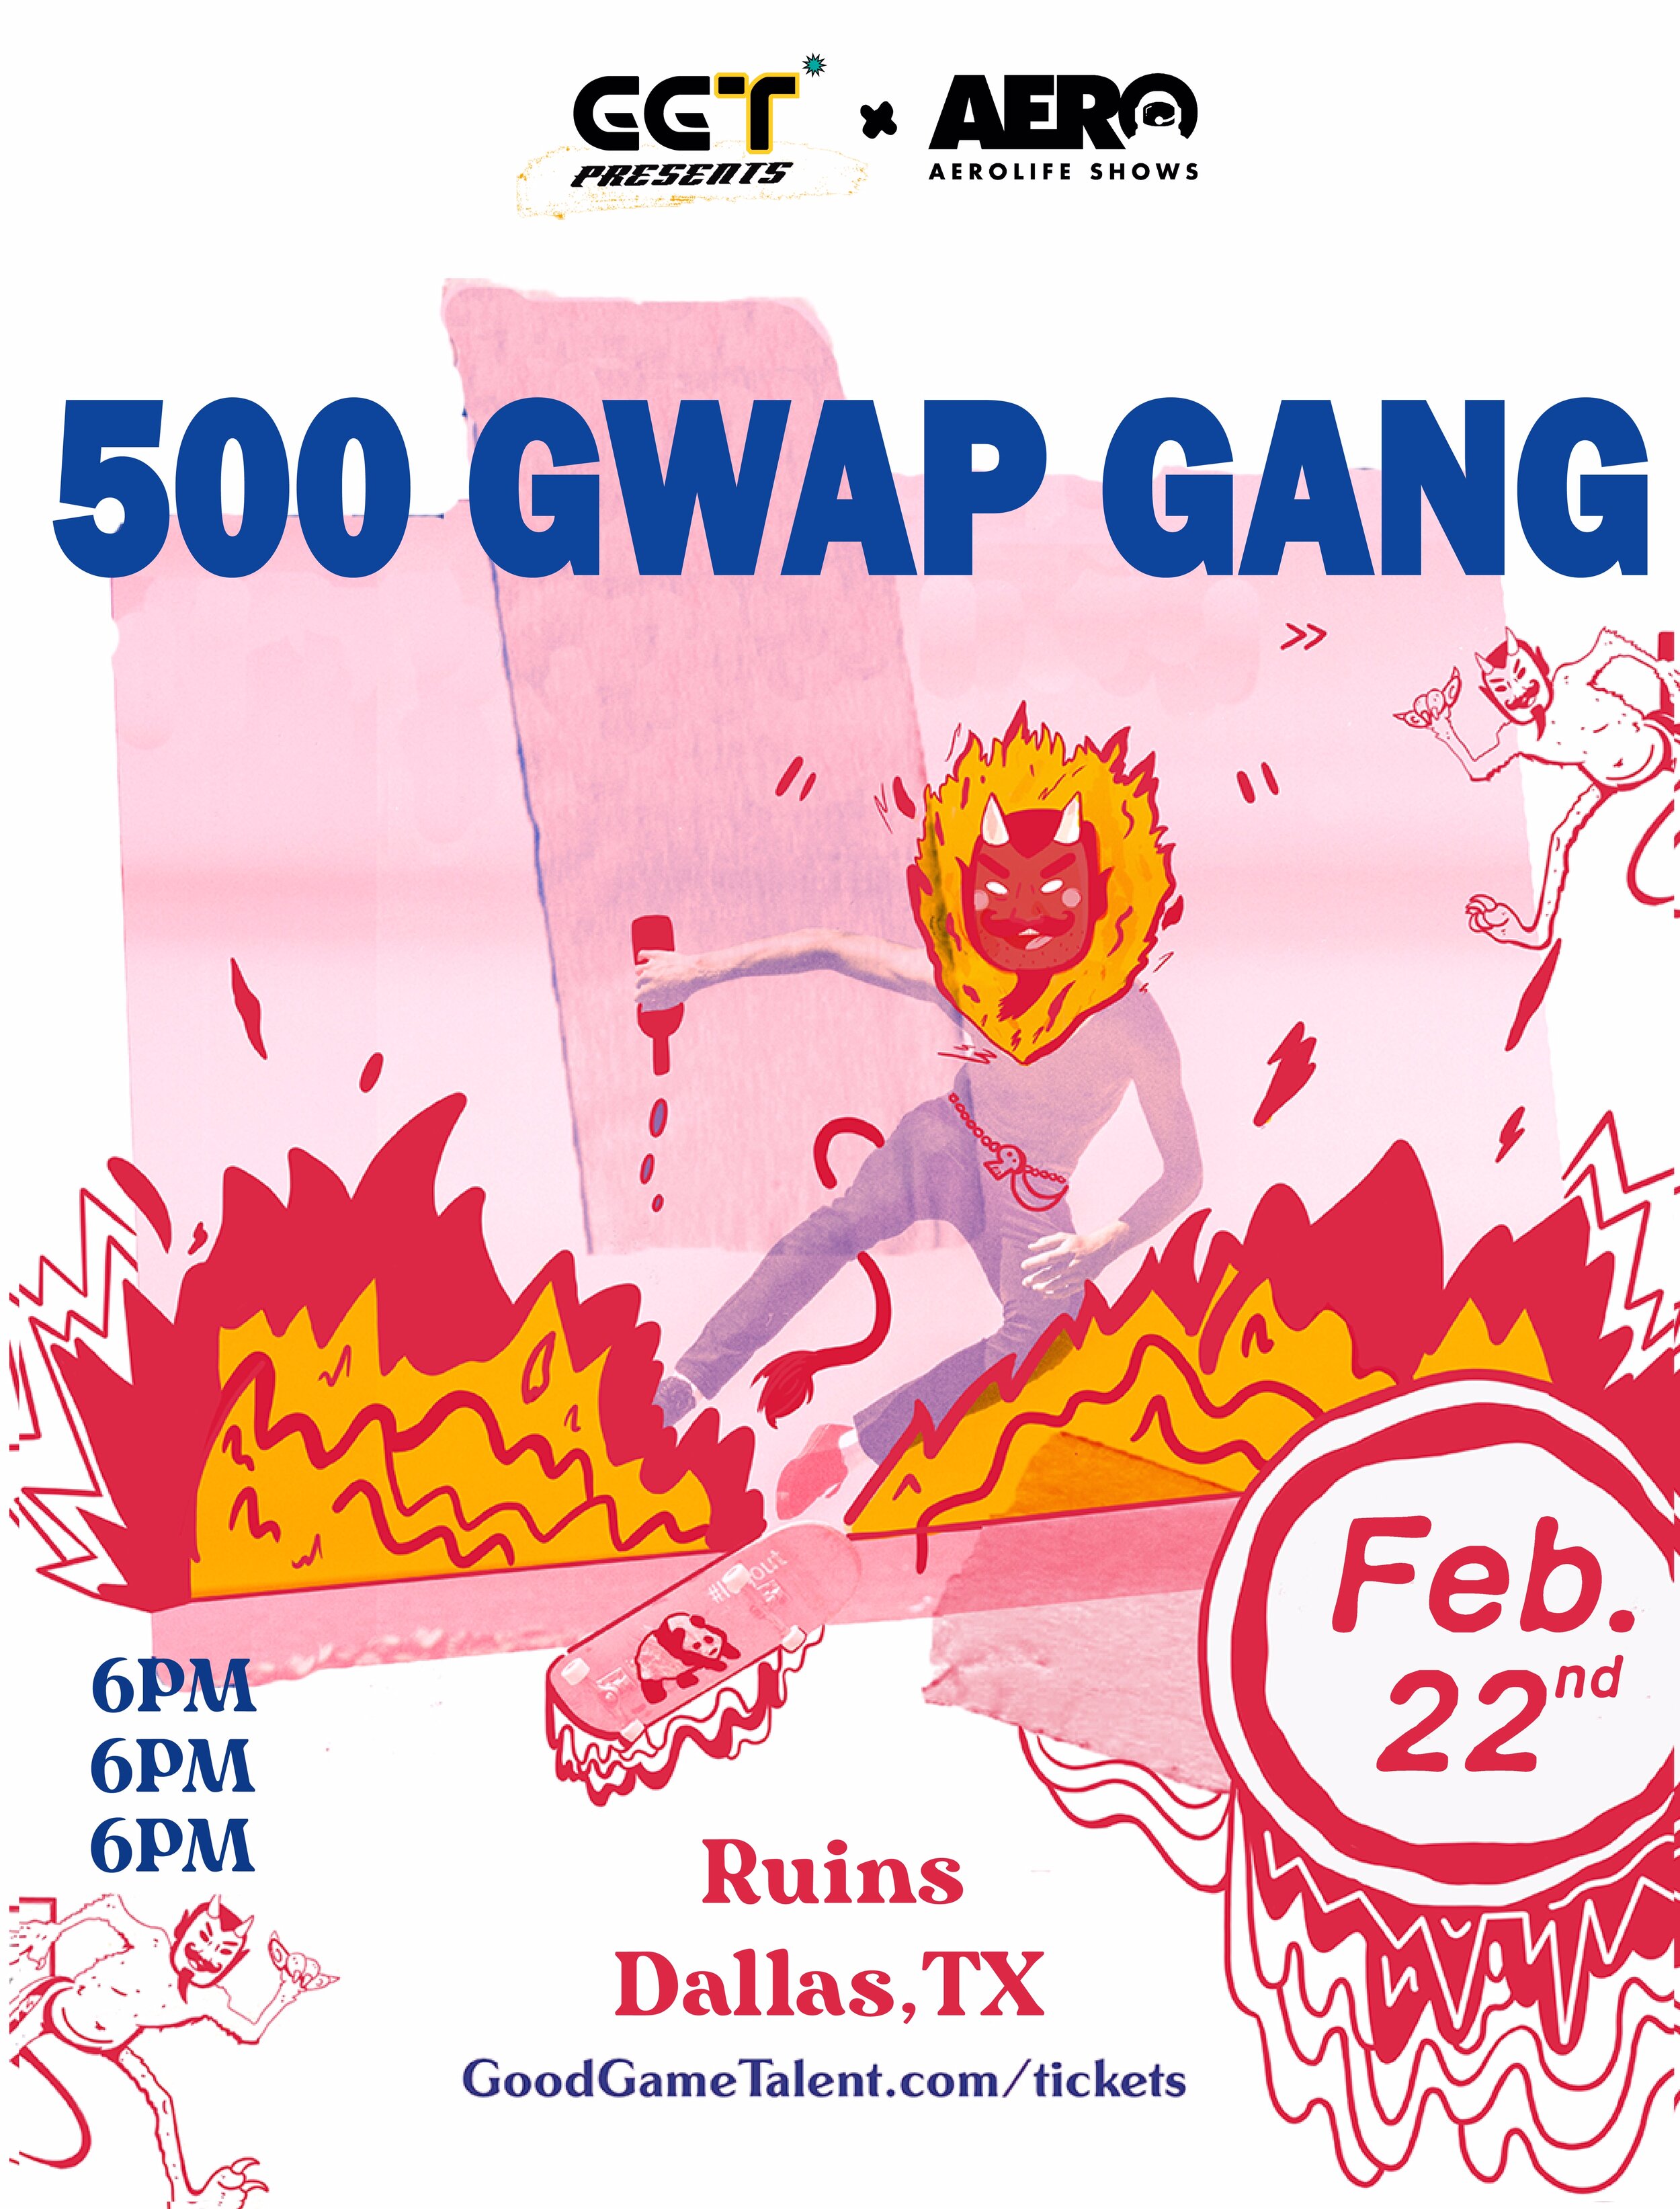 500 Gwap Gang- Live Ruins Dallas, TX — Good Game Talent photo photo pic